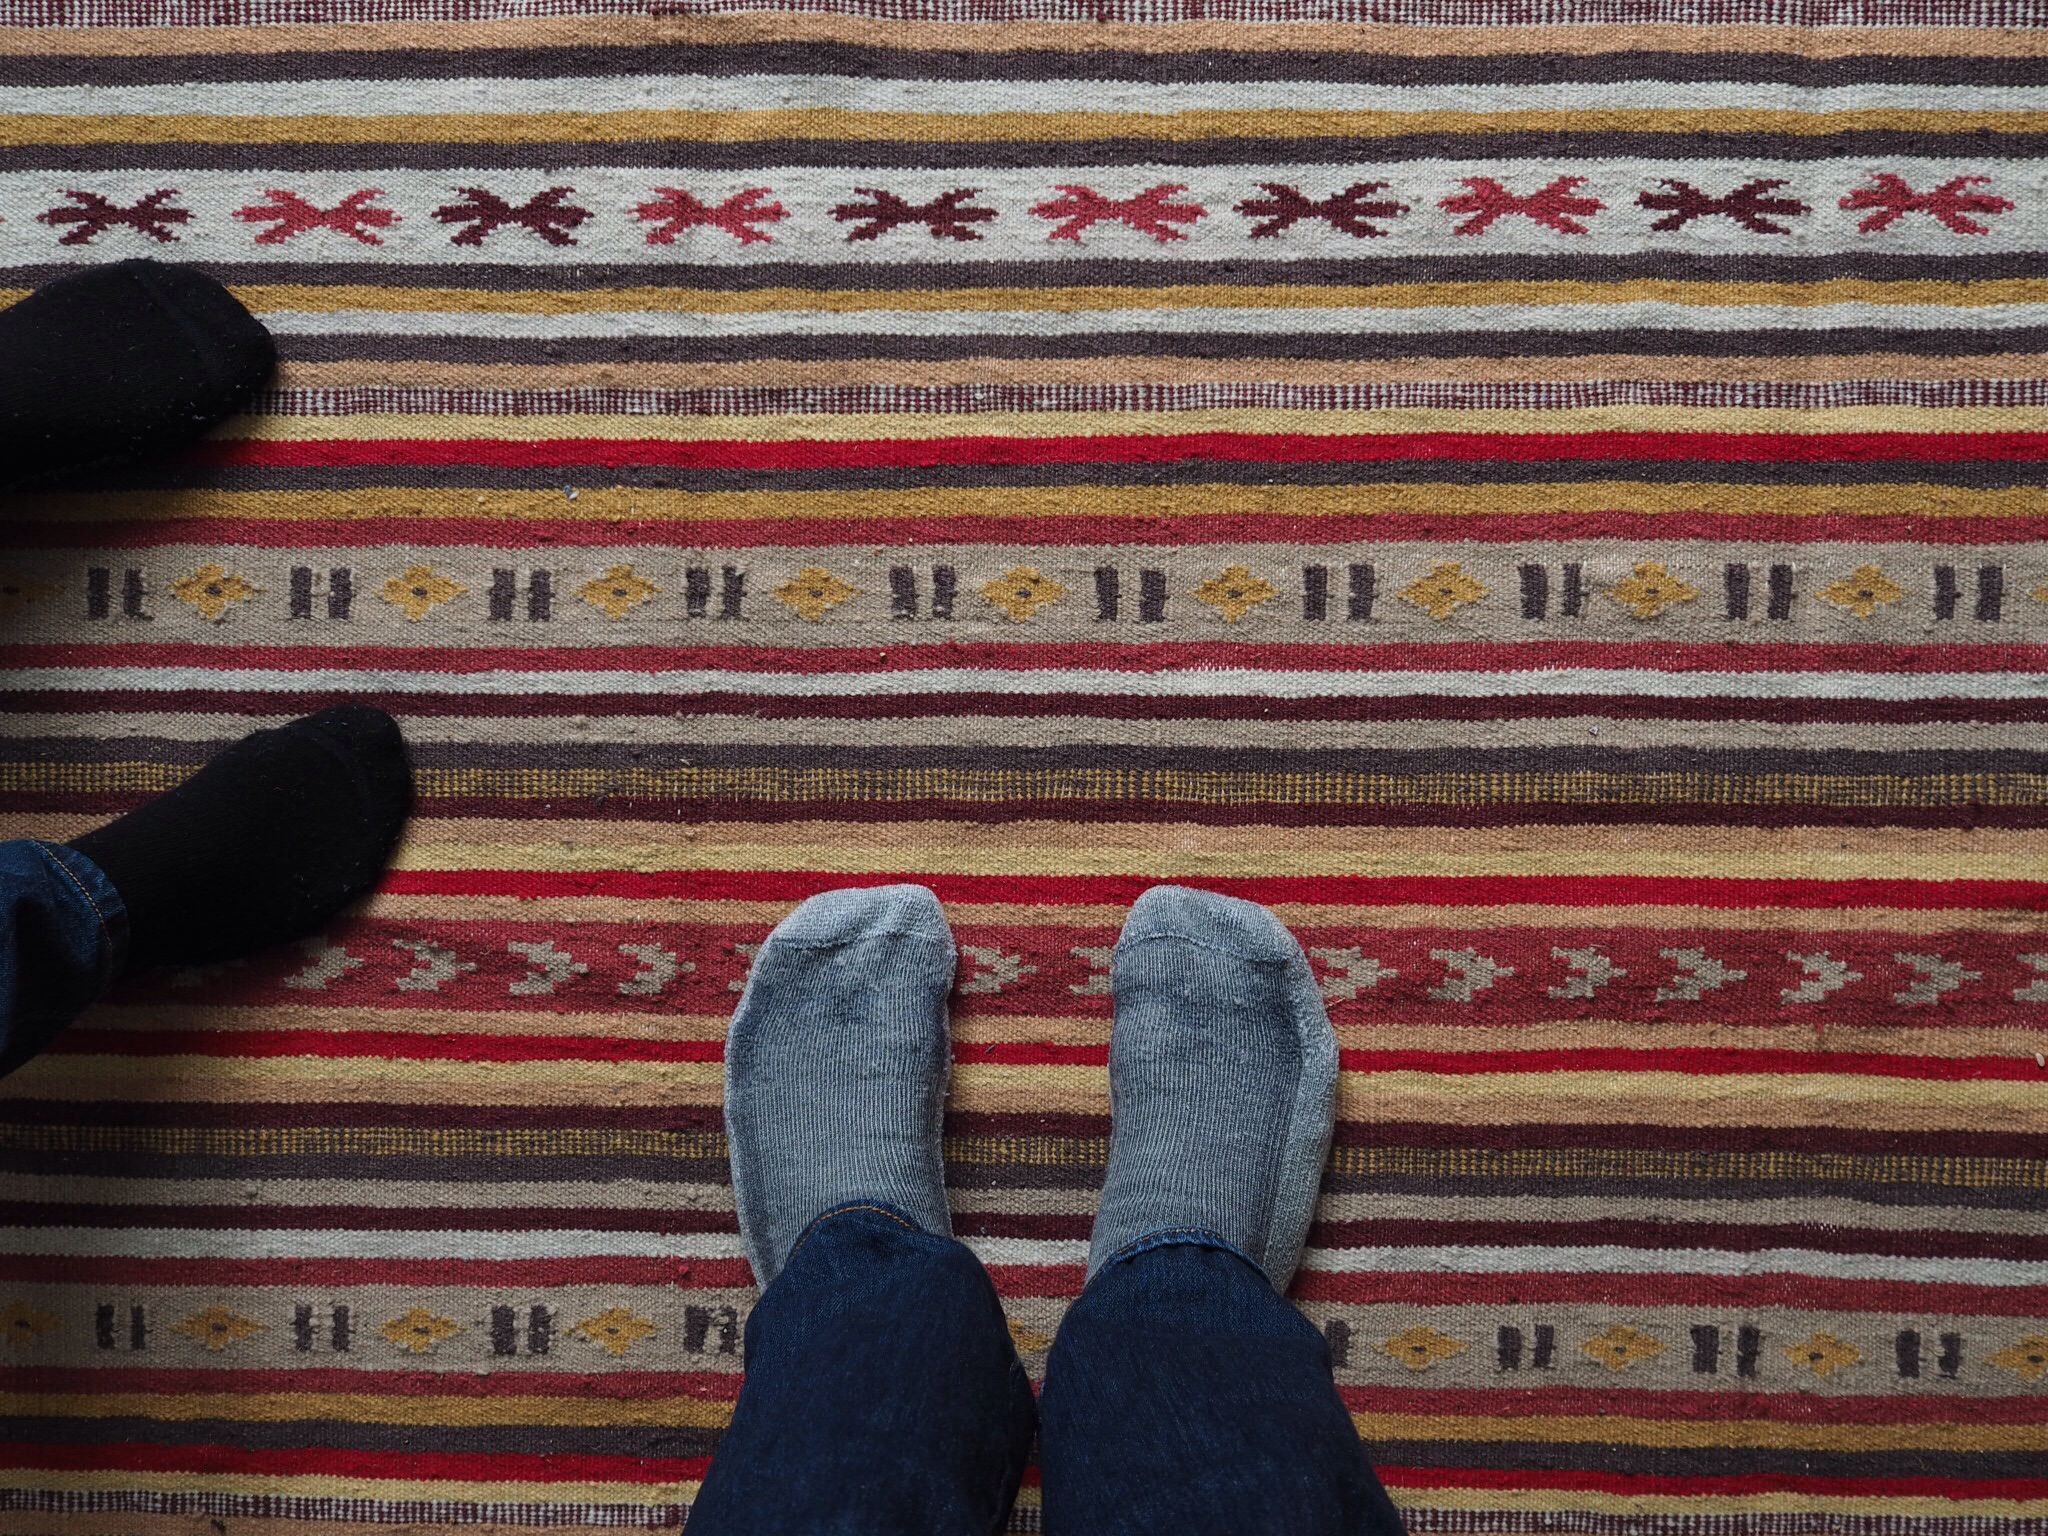 Untitled, socks, jeans, rug